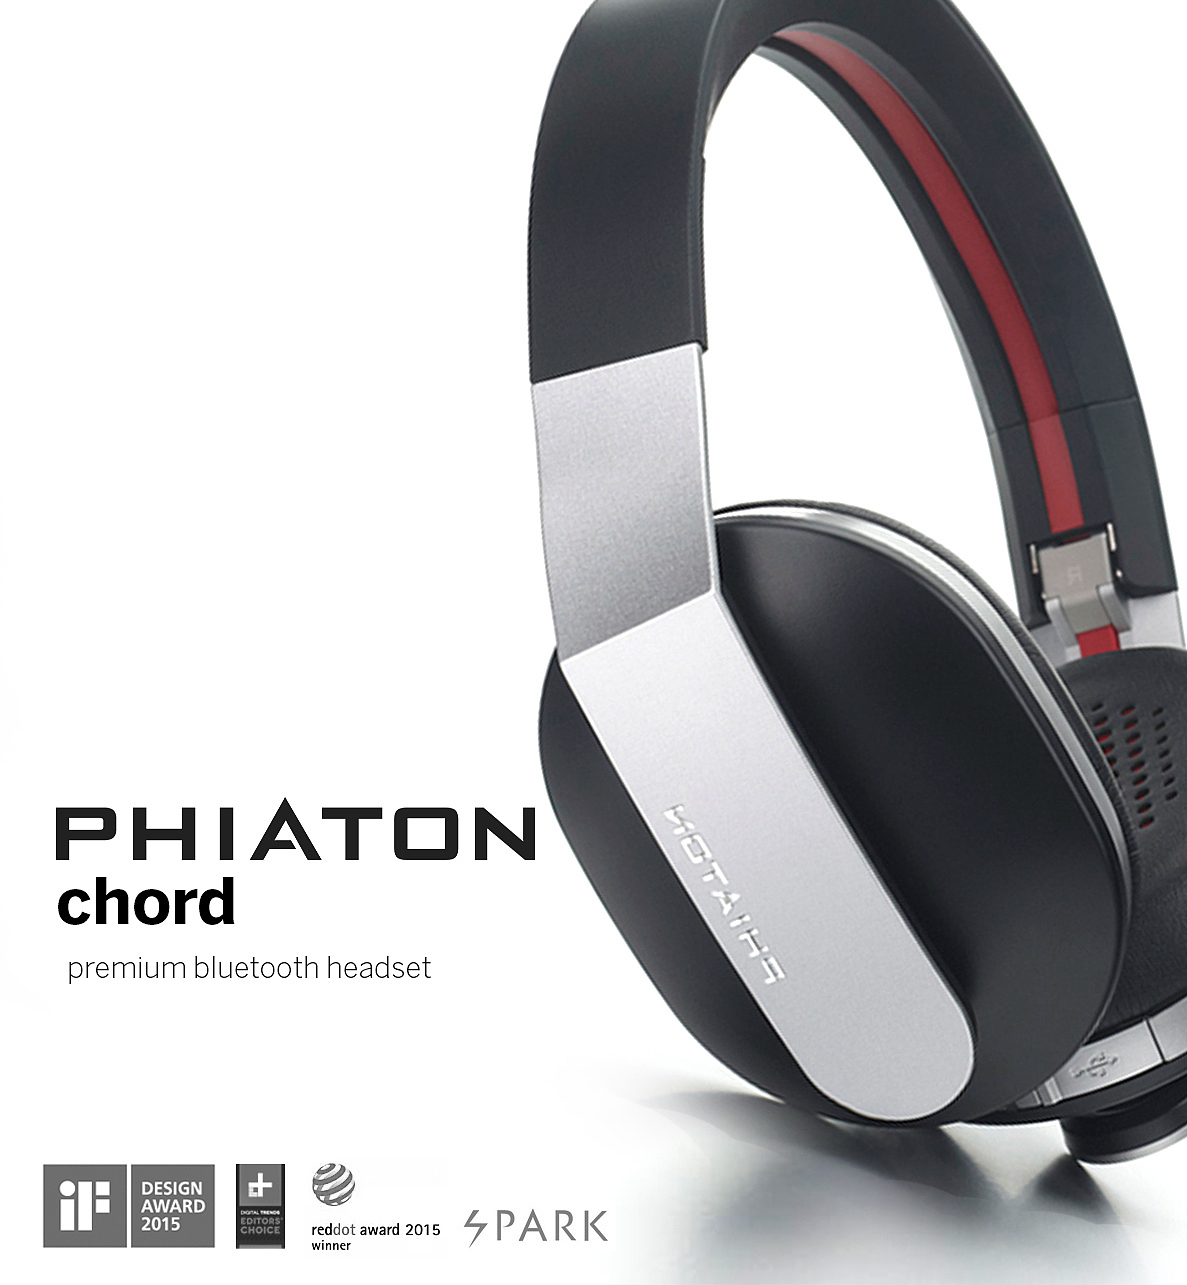 phiaton，耳机，时尚，红点，if，获奖作品，头戴式耳机，品牌设计，